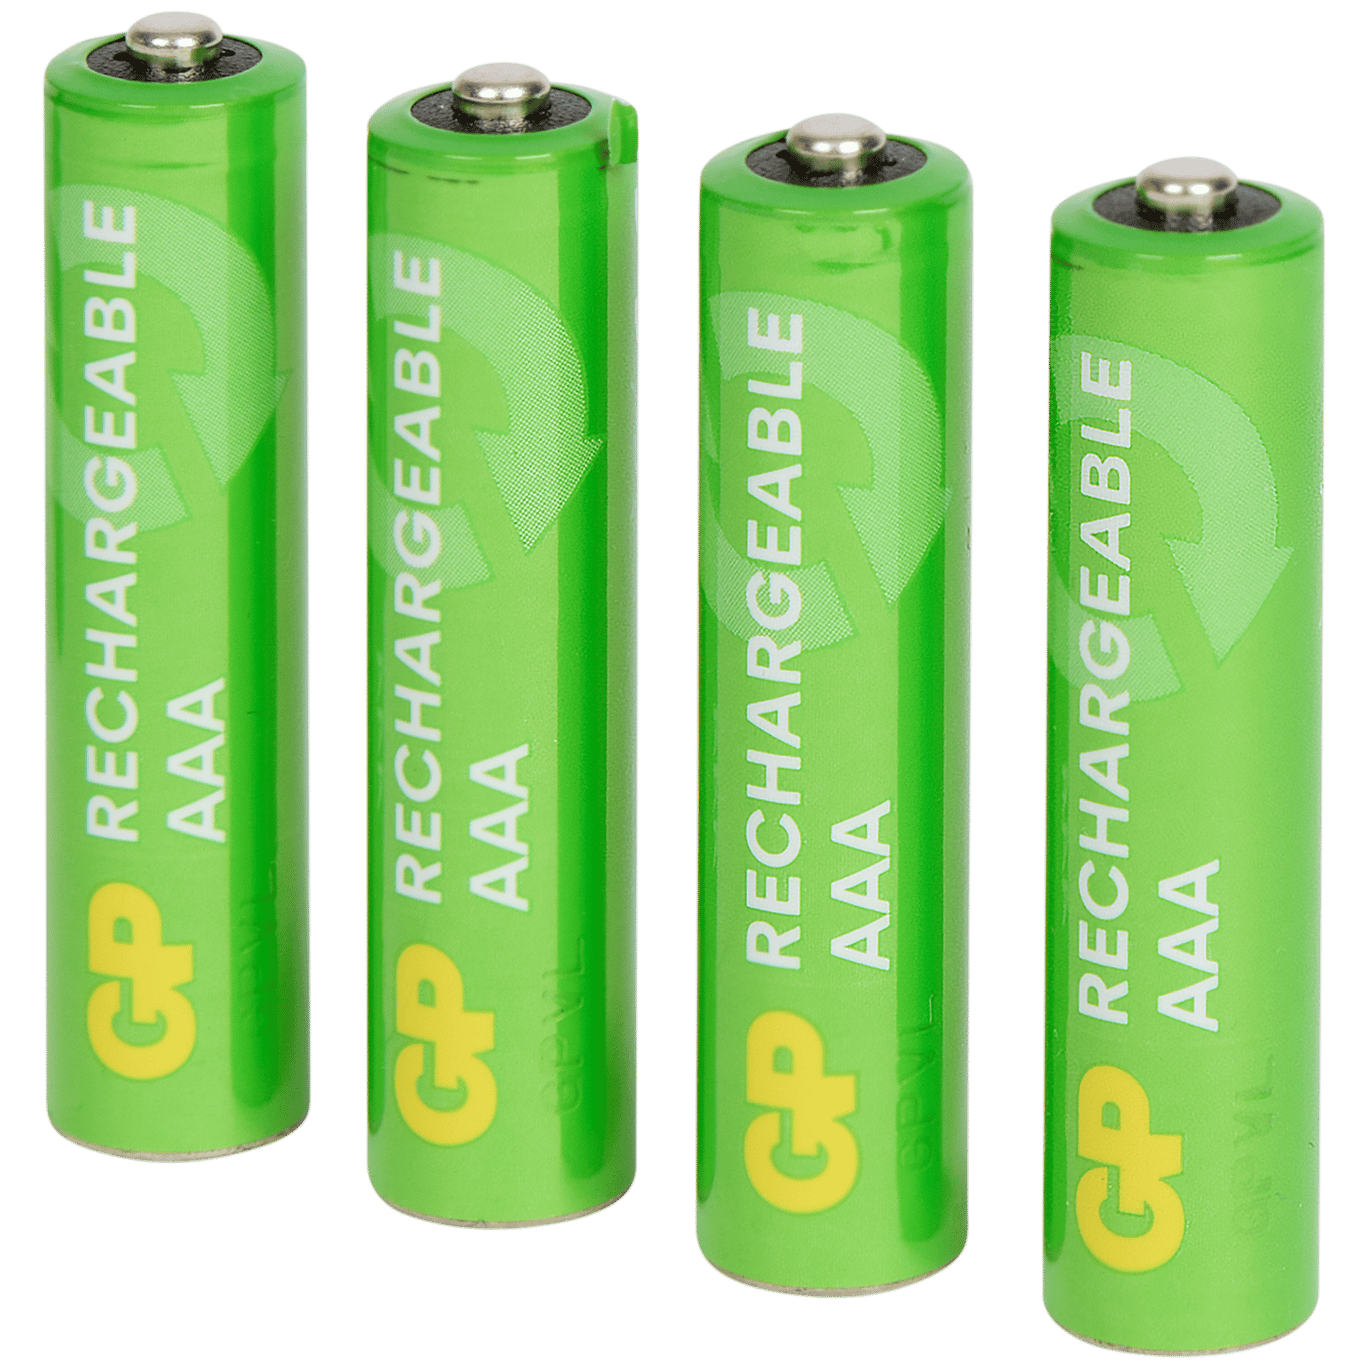 GP oplaadbare batterijen AAA